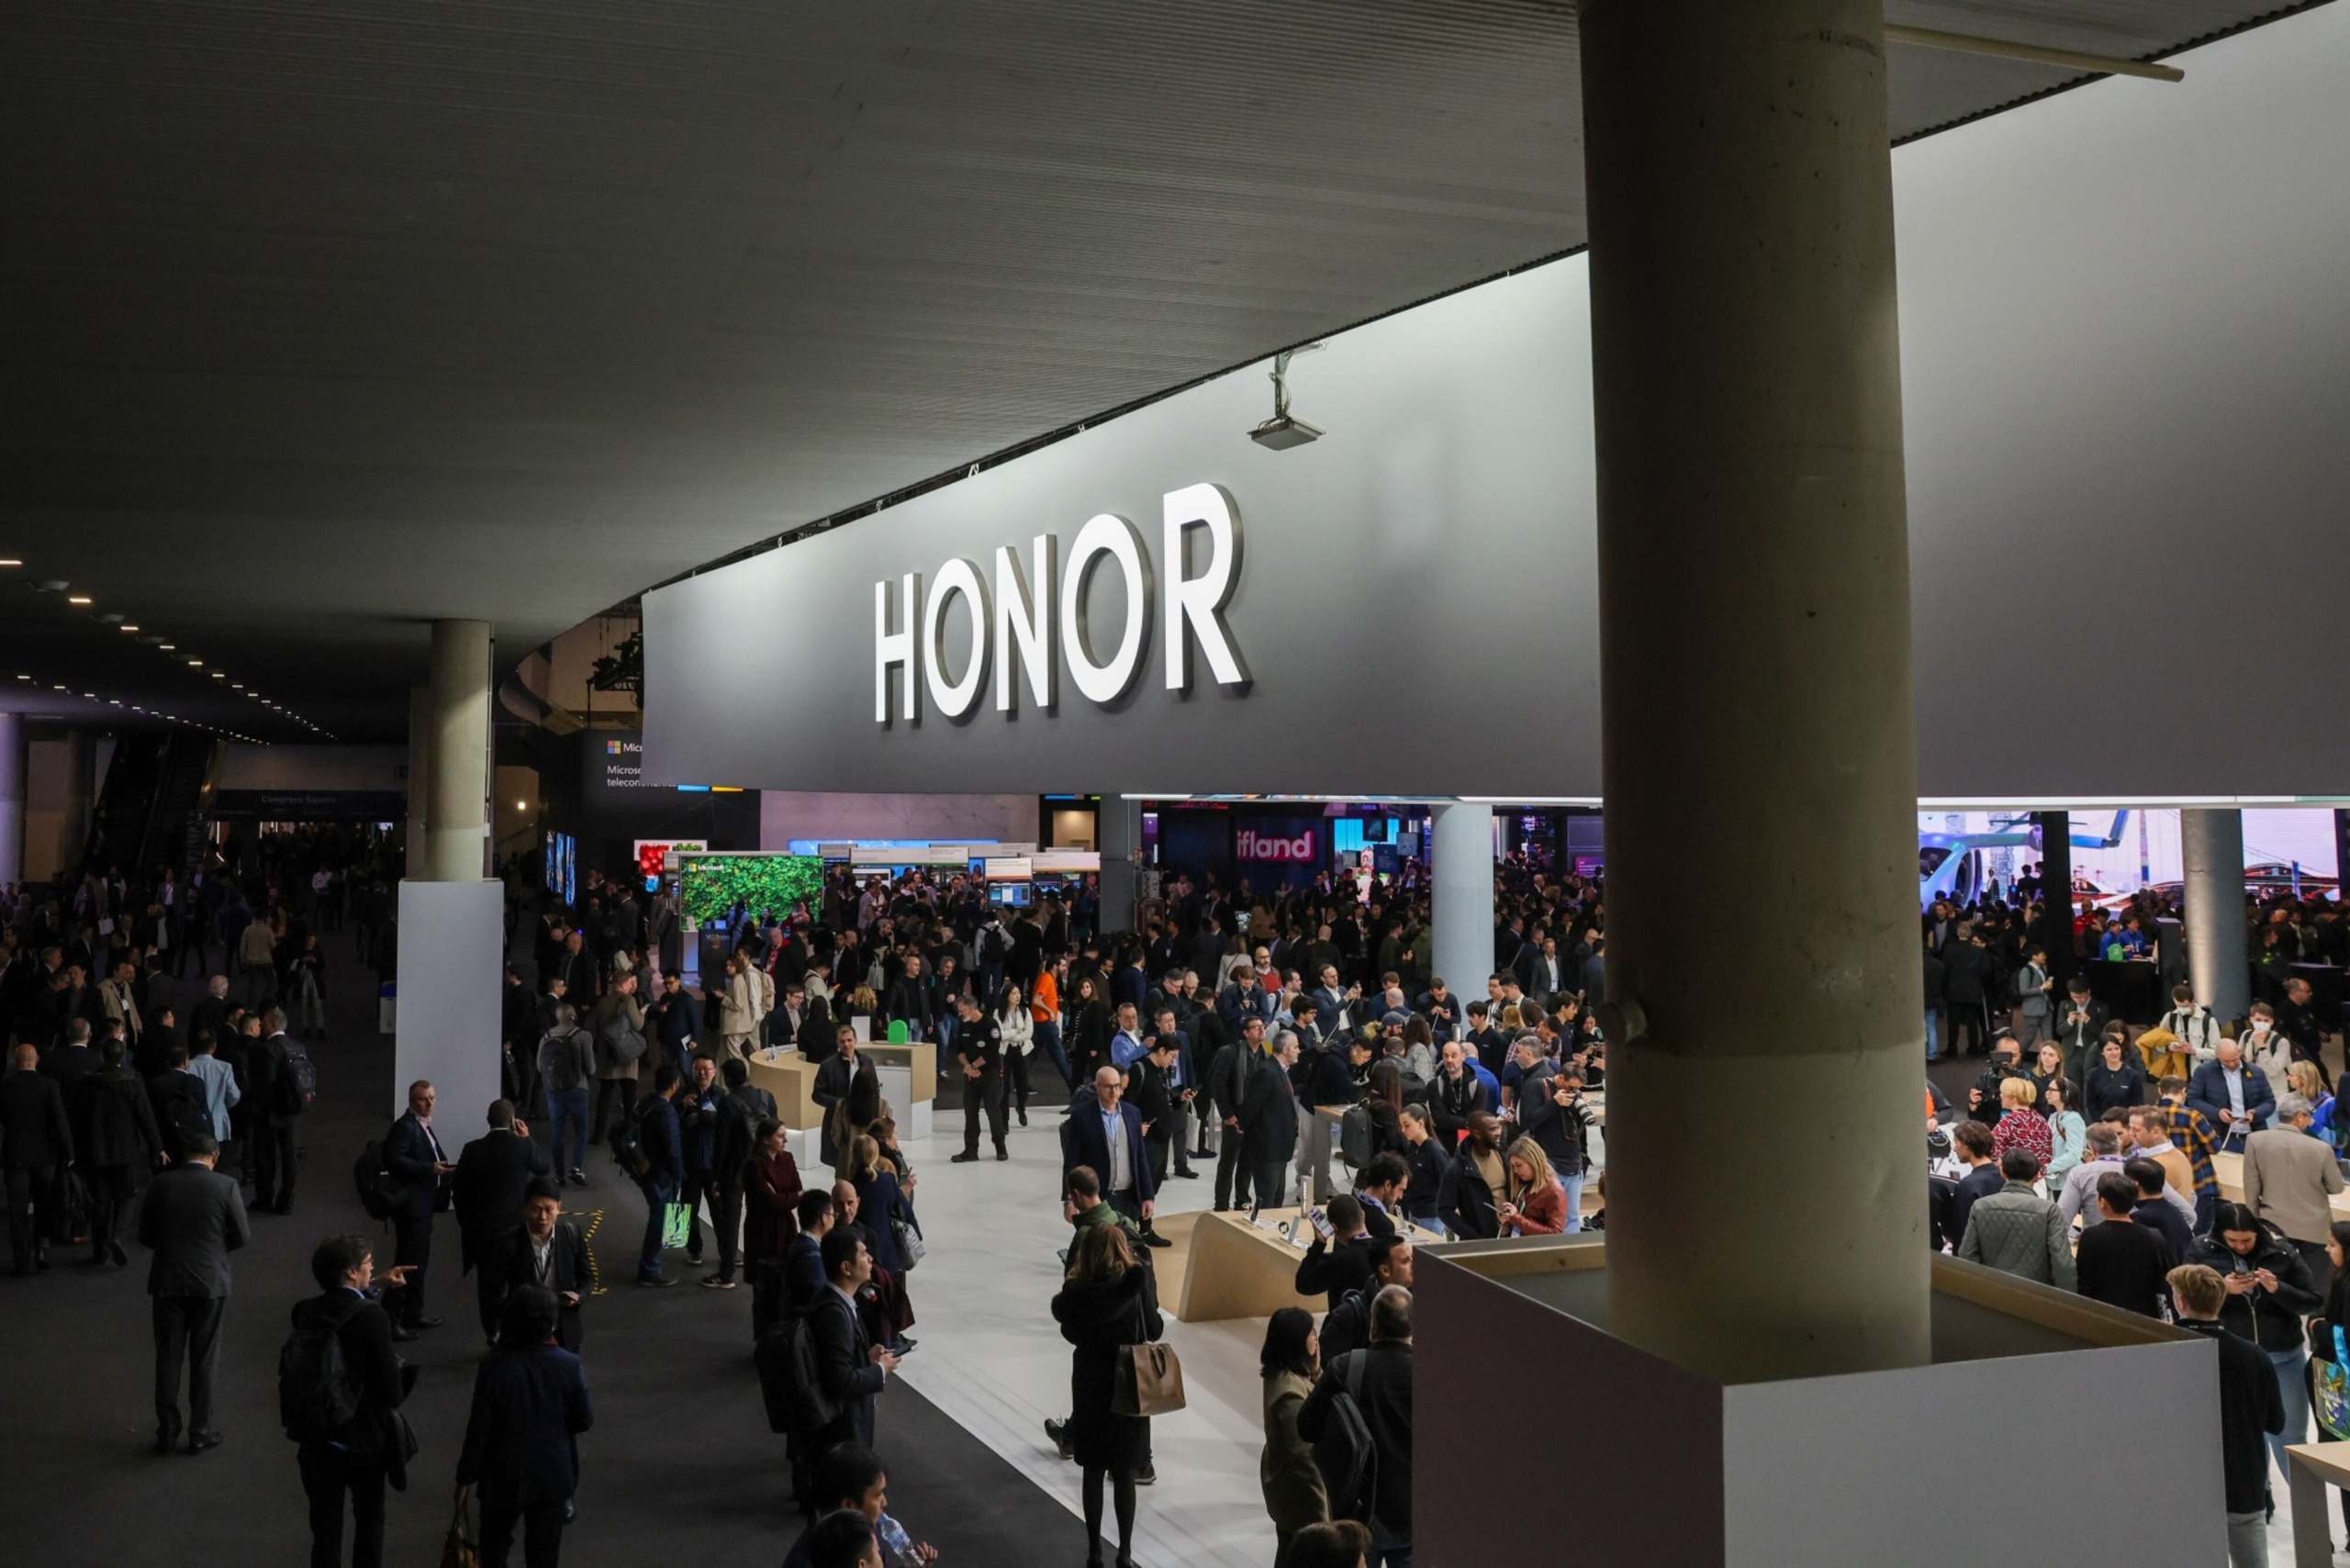 Honor, колишній суббренд підсанкційної Huawei, починає шлях до IPO (первинного публічного розміщення акцій)